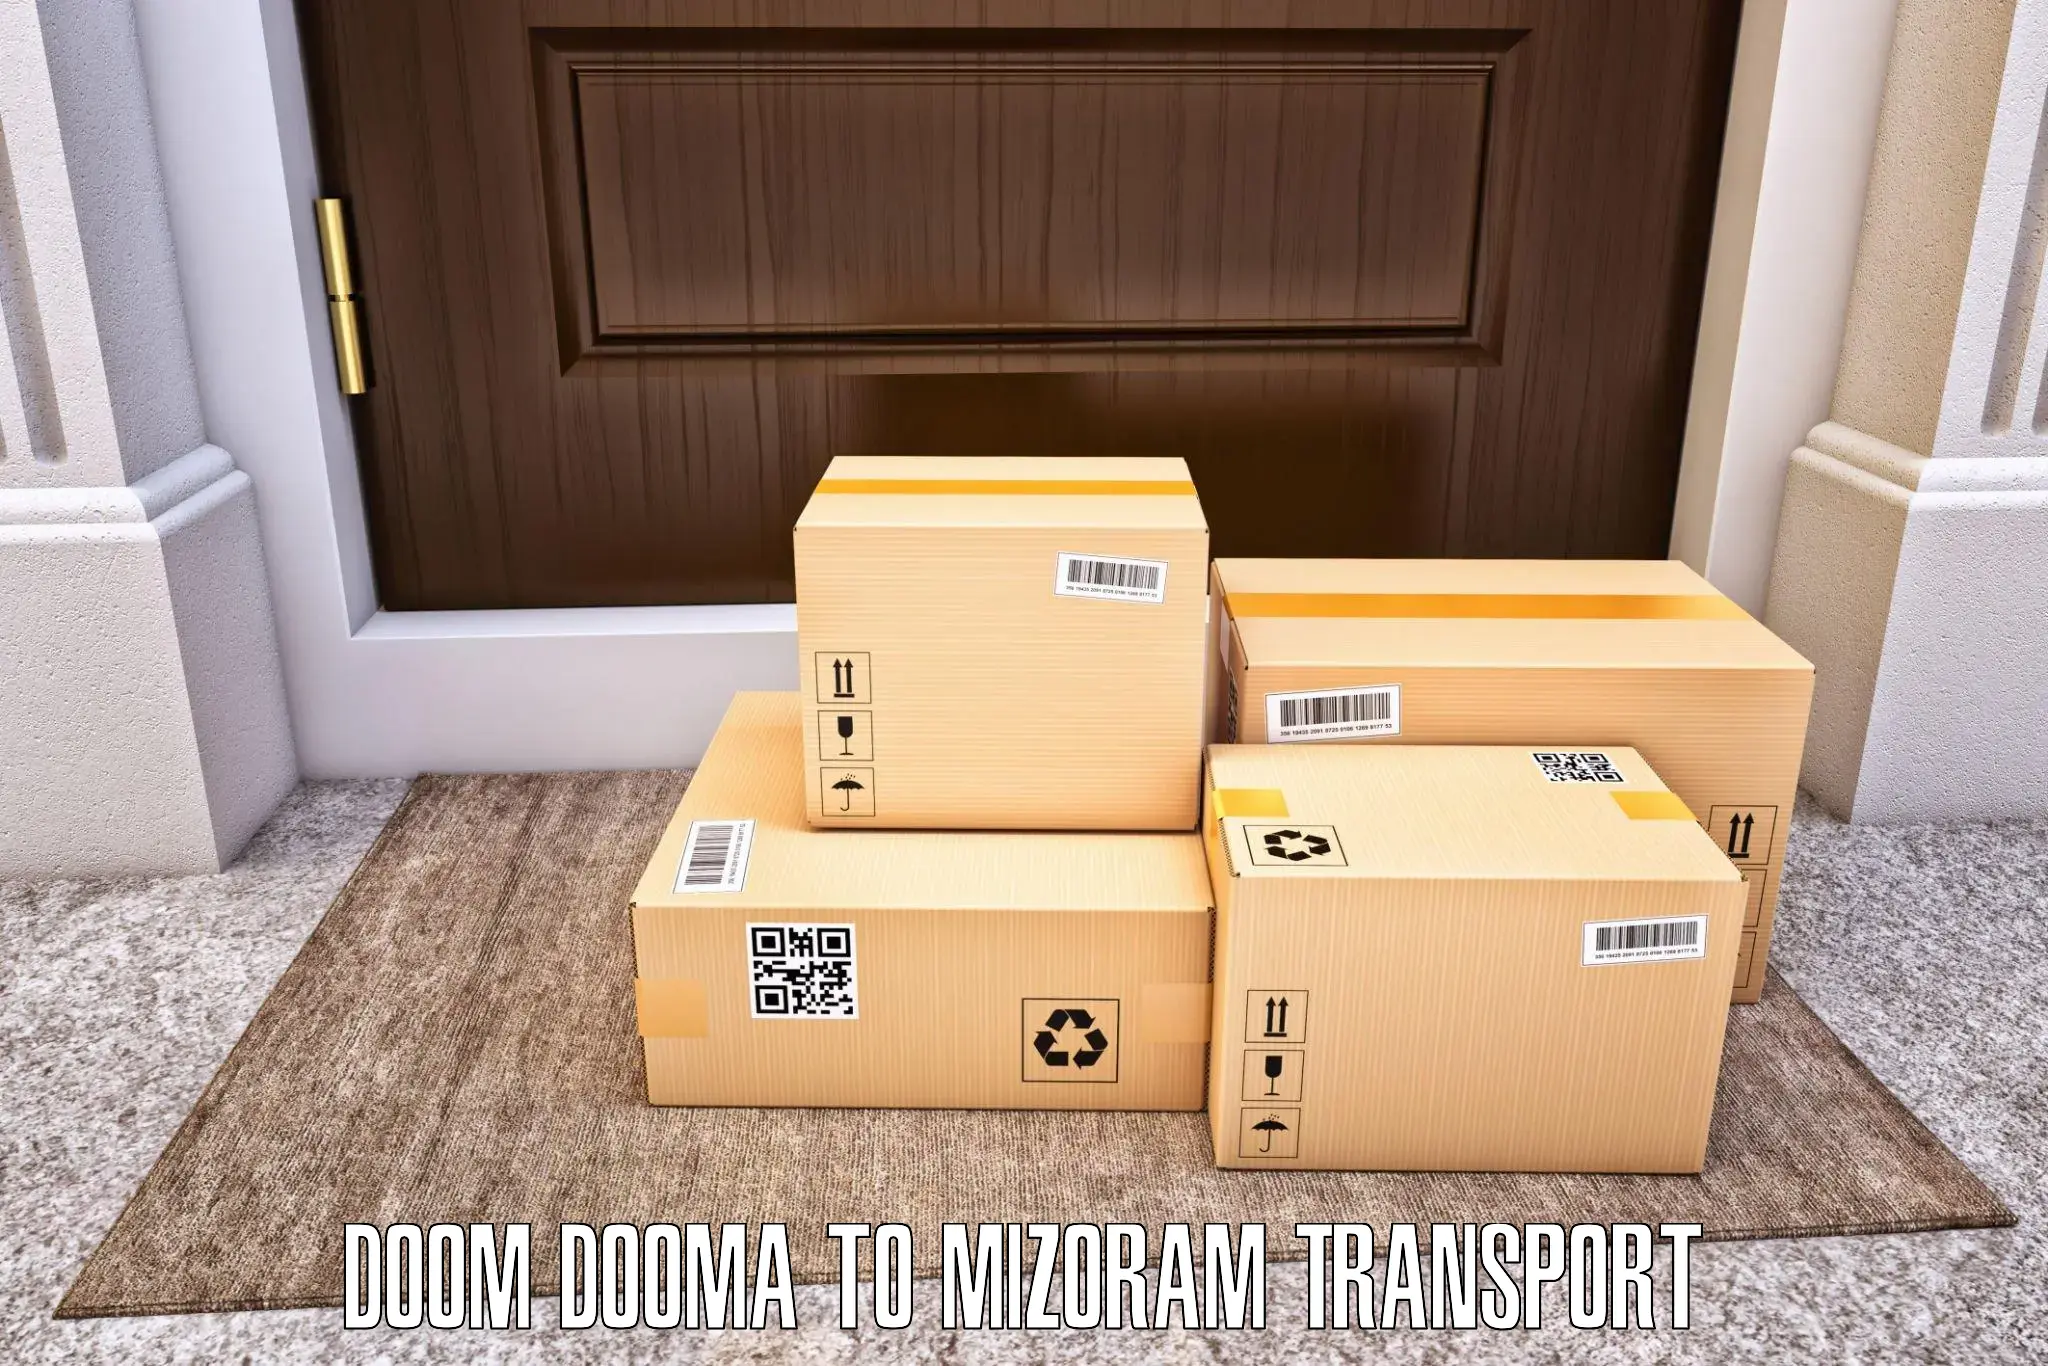 Daily transport service Doom Dooma to Siaha